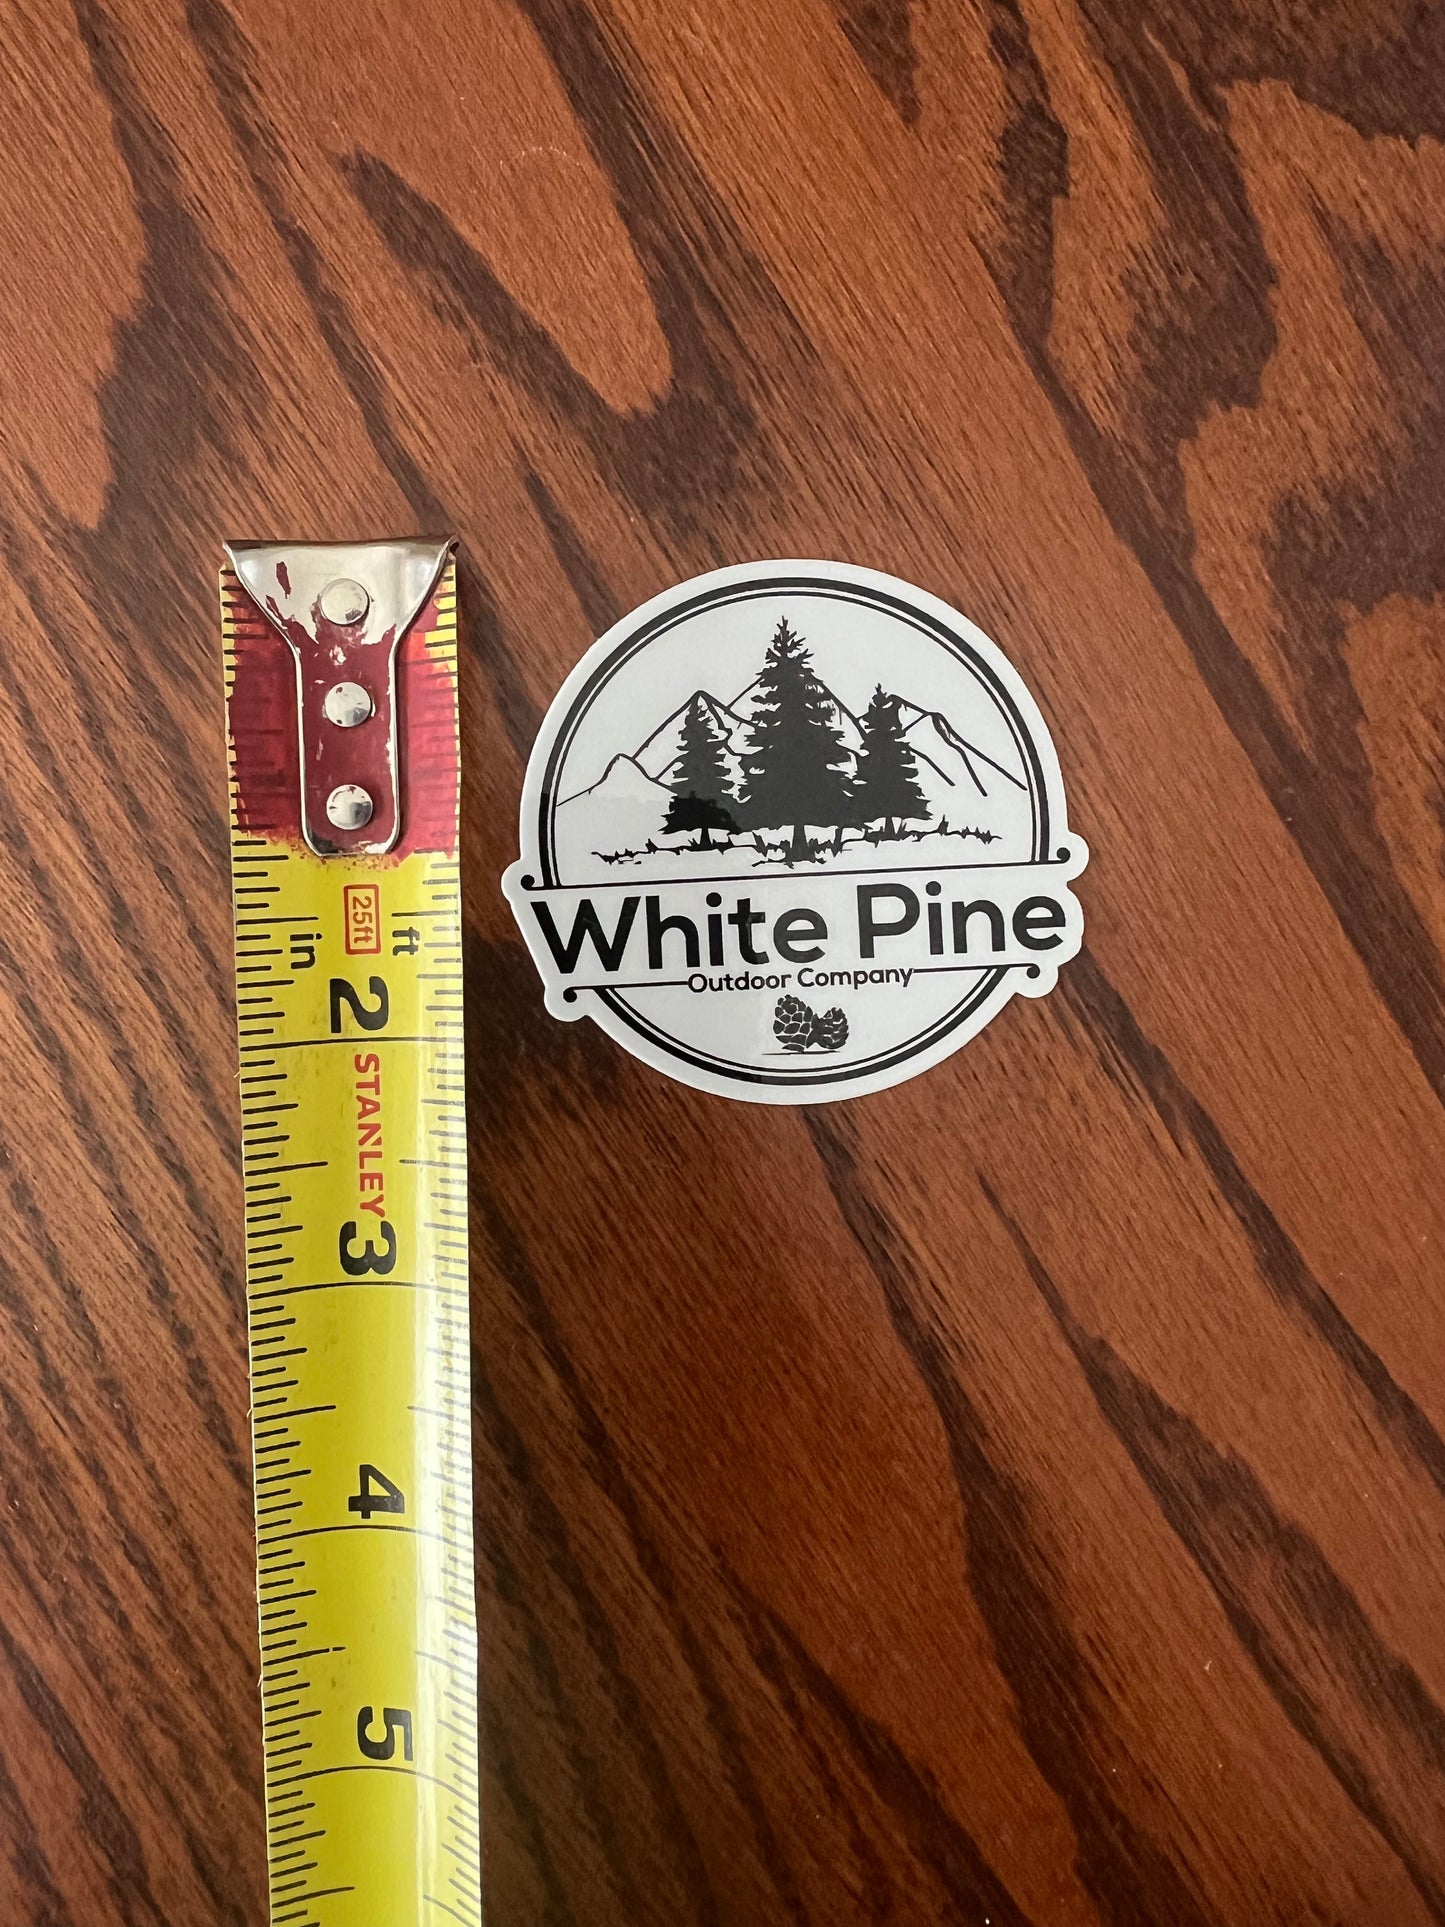 White Pine sticker